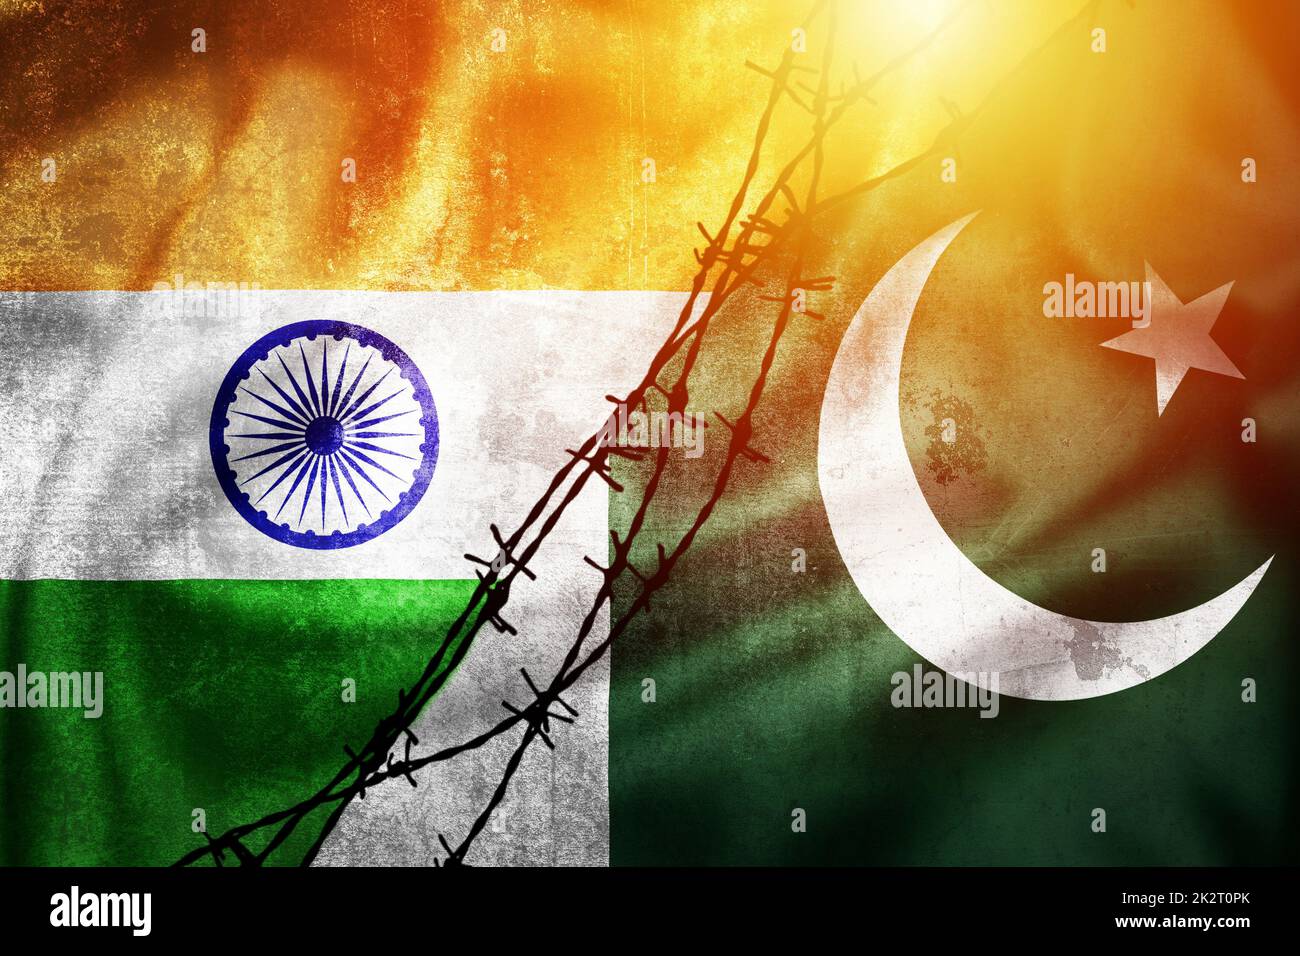 Grunge drapeaux de l'Inde et du Pakistan divisé par barbelés soleil brume illustration Banque D'Images